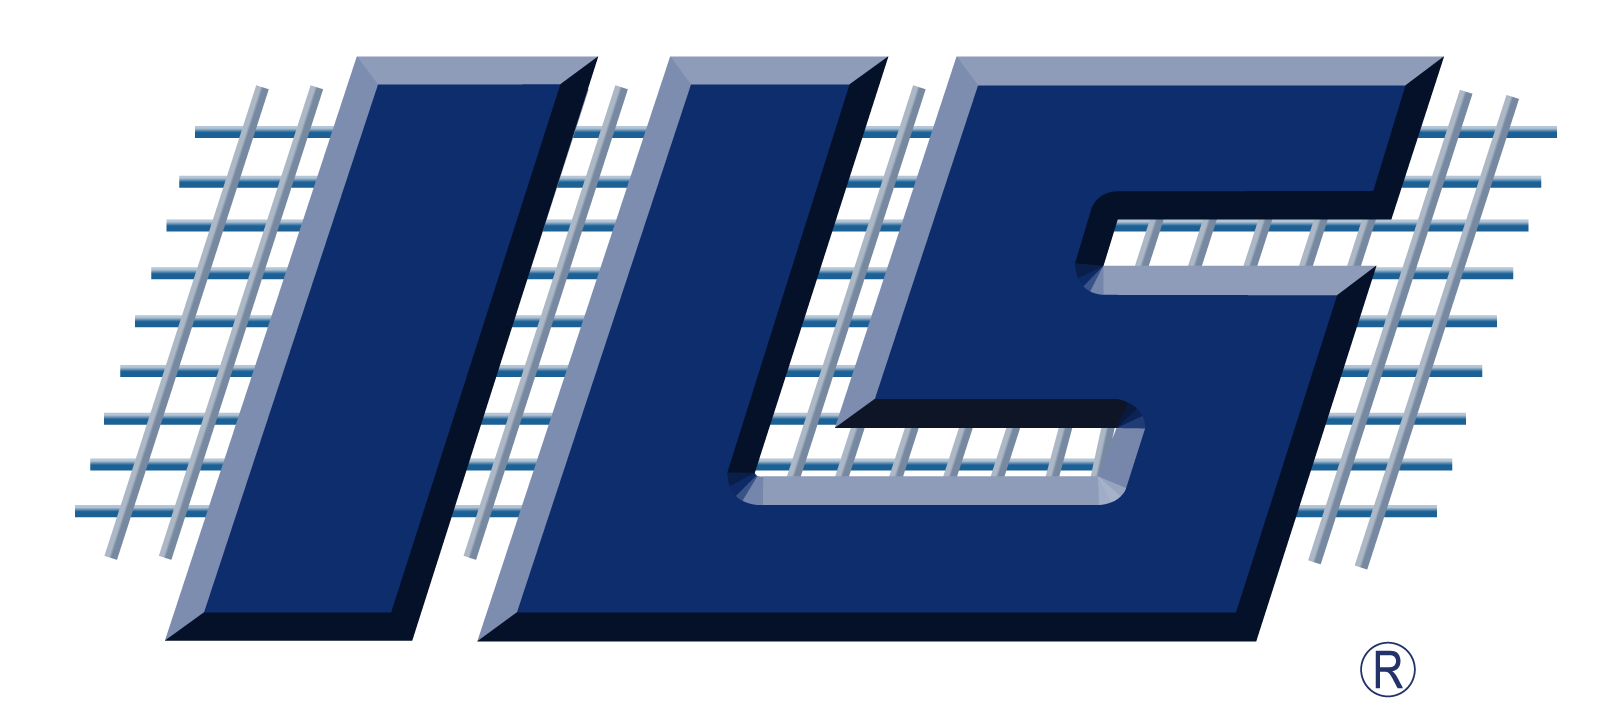 ILS Logo